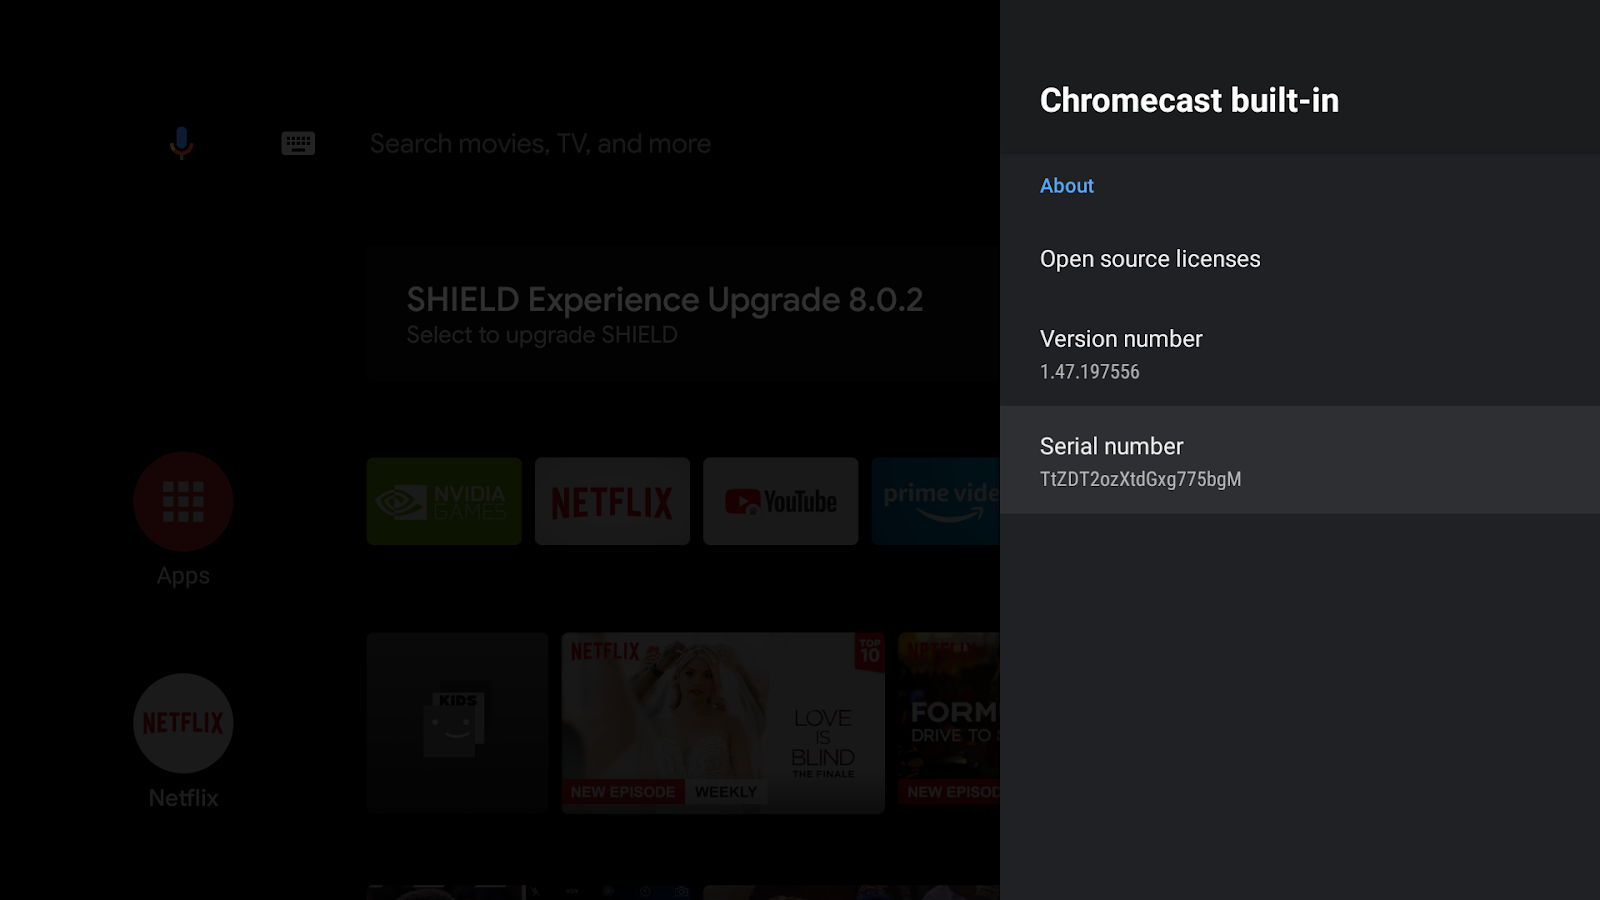 תמונה של מסך Android TV שבו מוצגים המסך &#39;Chromecast Built-In&#39; מספר הגרסה ומספר הסידורי